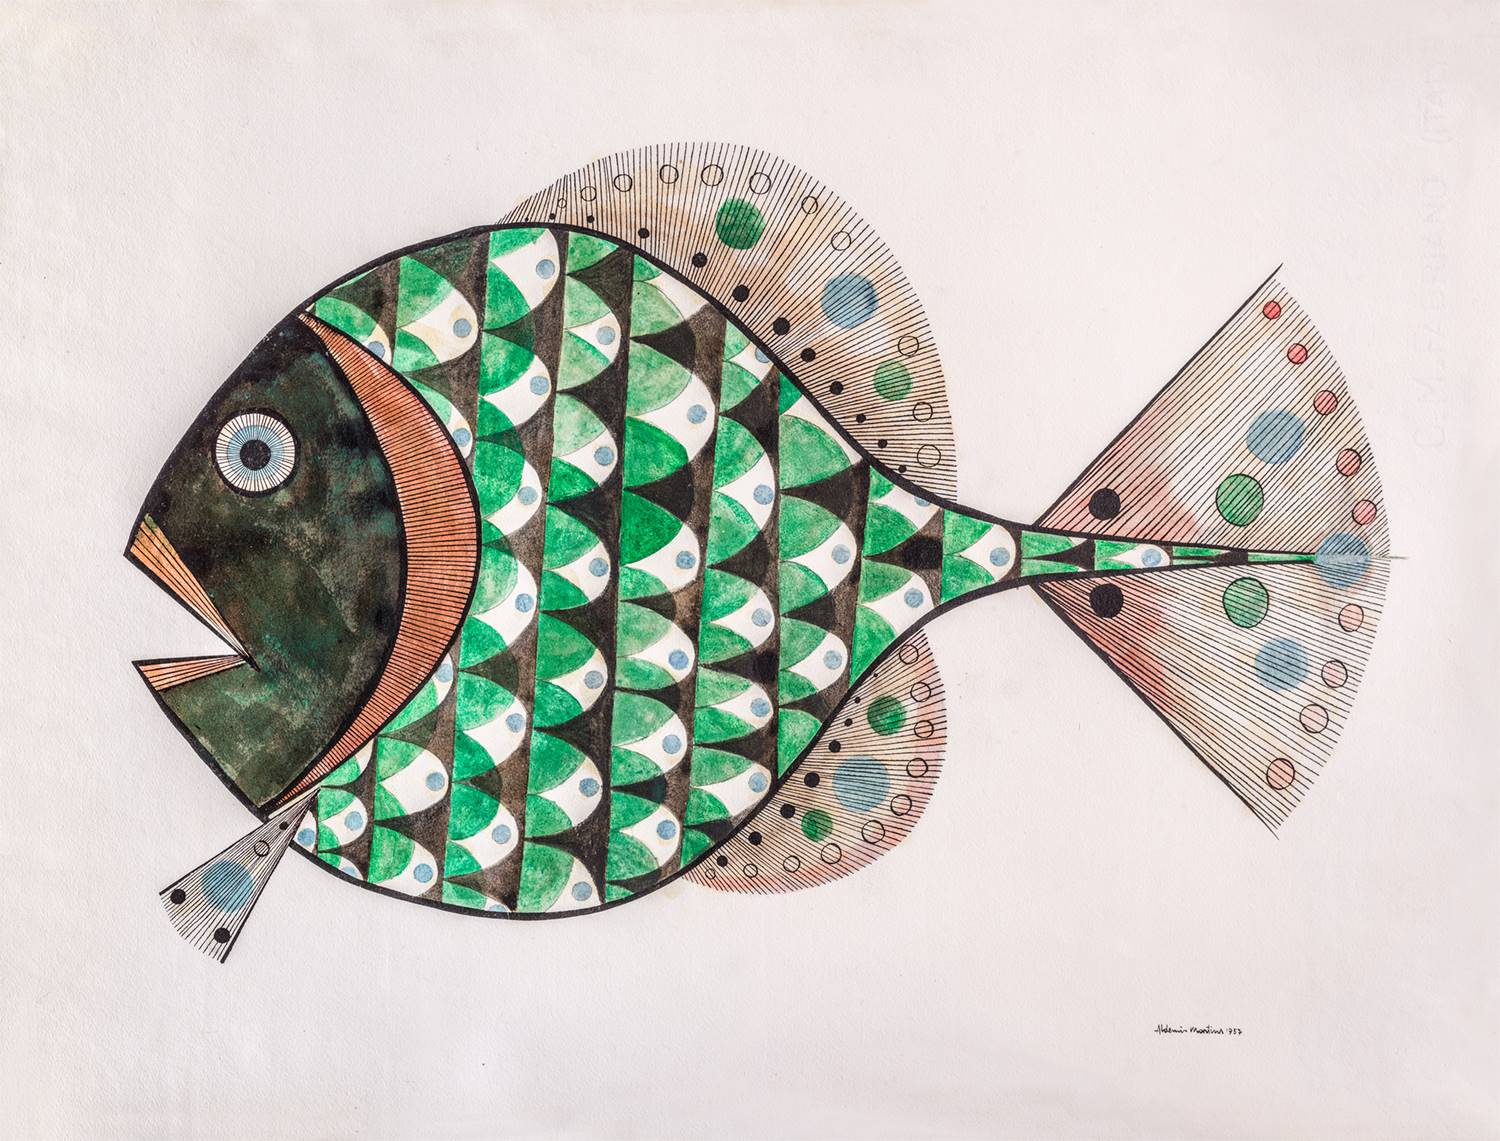 ‘Peixe’ (Pez) de Aldemir Martins, 1957. Pieza de la exposición “Lina Bo Bardi: Tupí or not tupí".